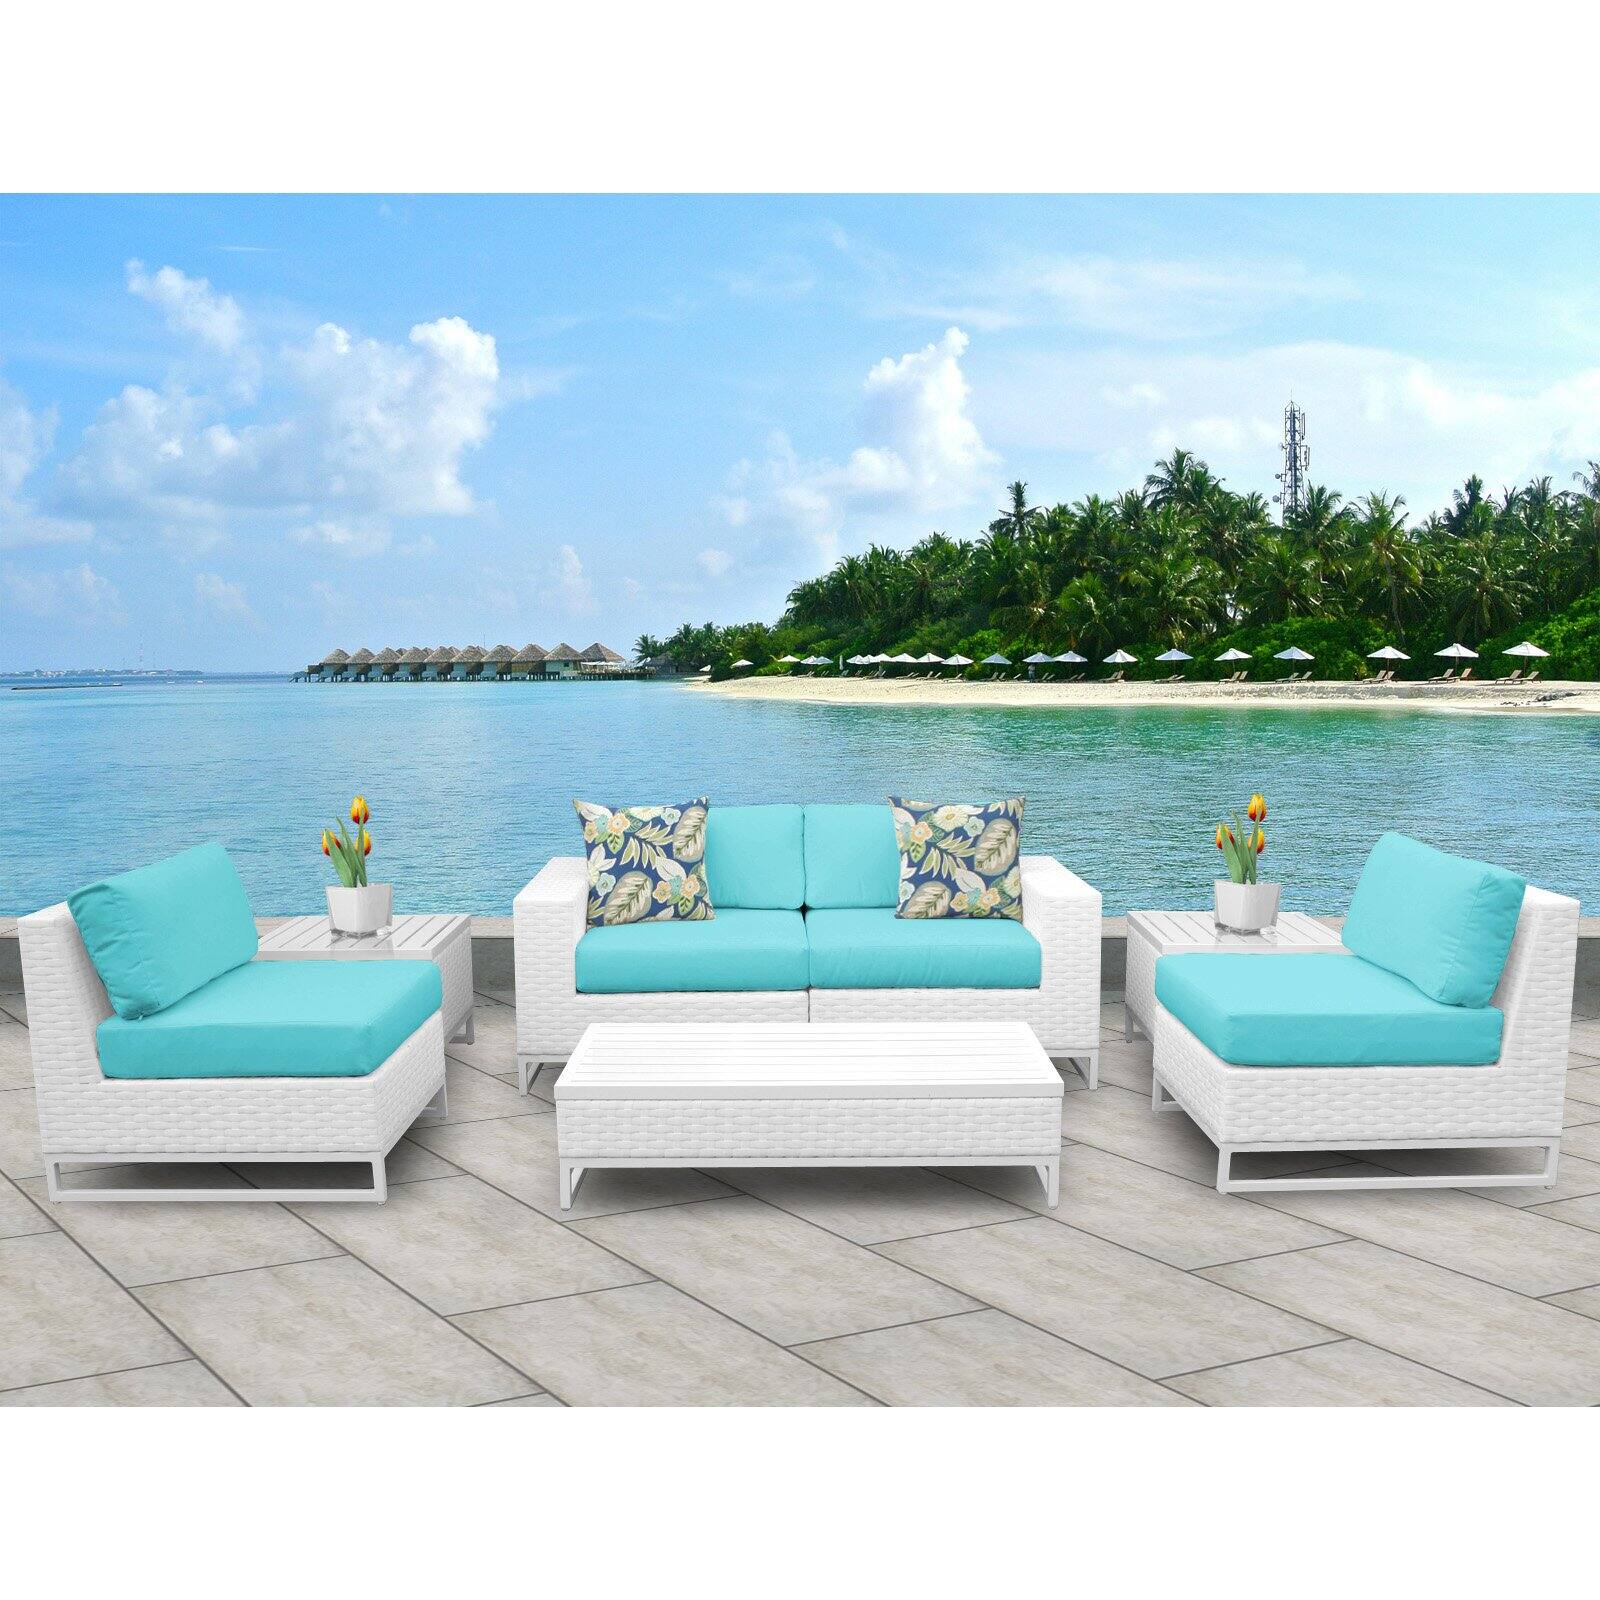 TK Classics Miami 7 Piece Outdoor Wicker Patio Furniture Set 07e - image 2 of 3